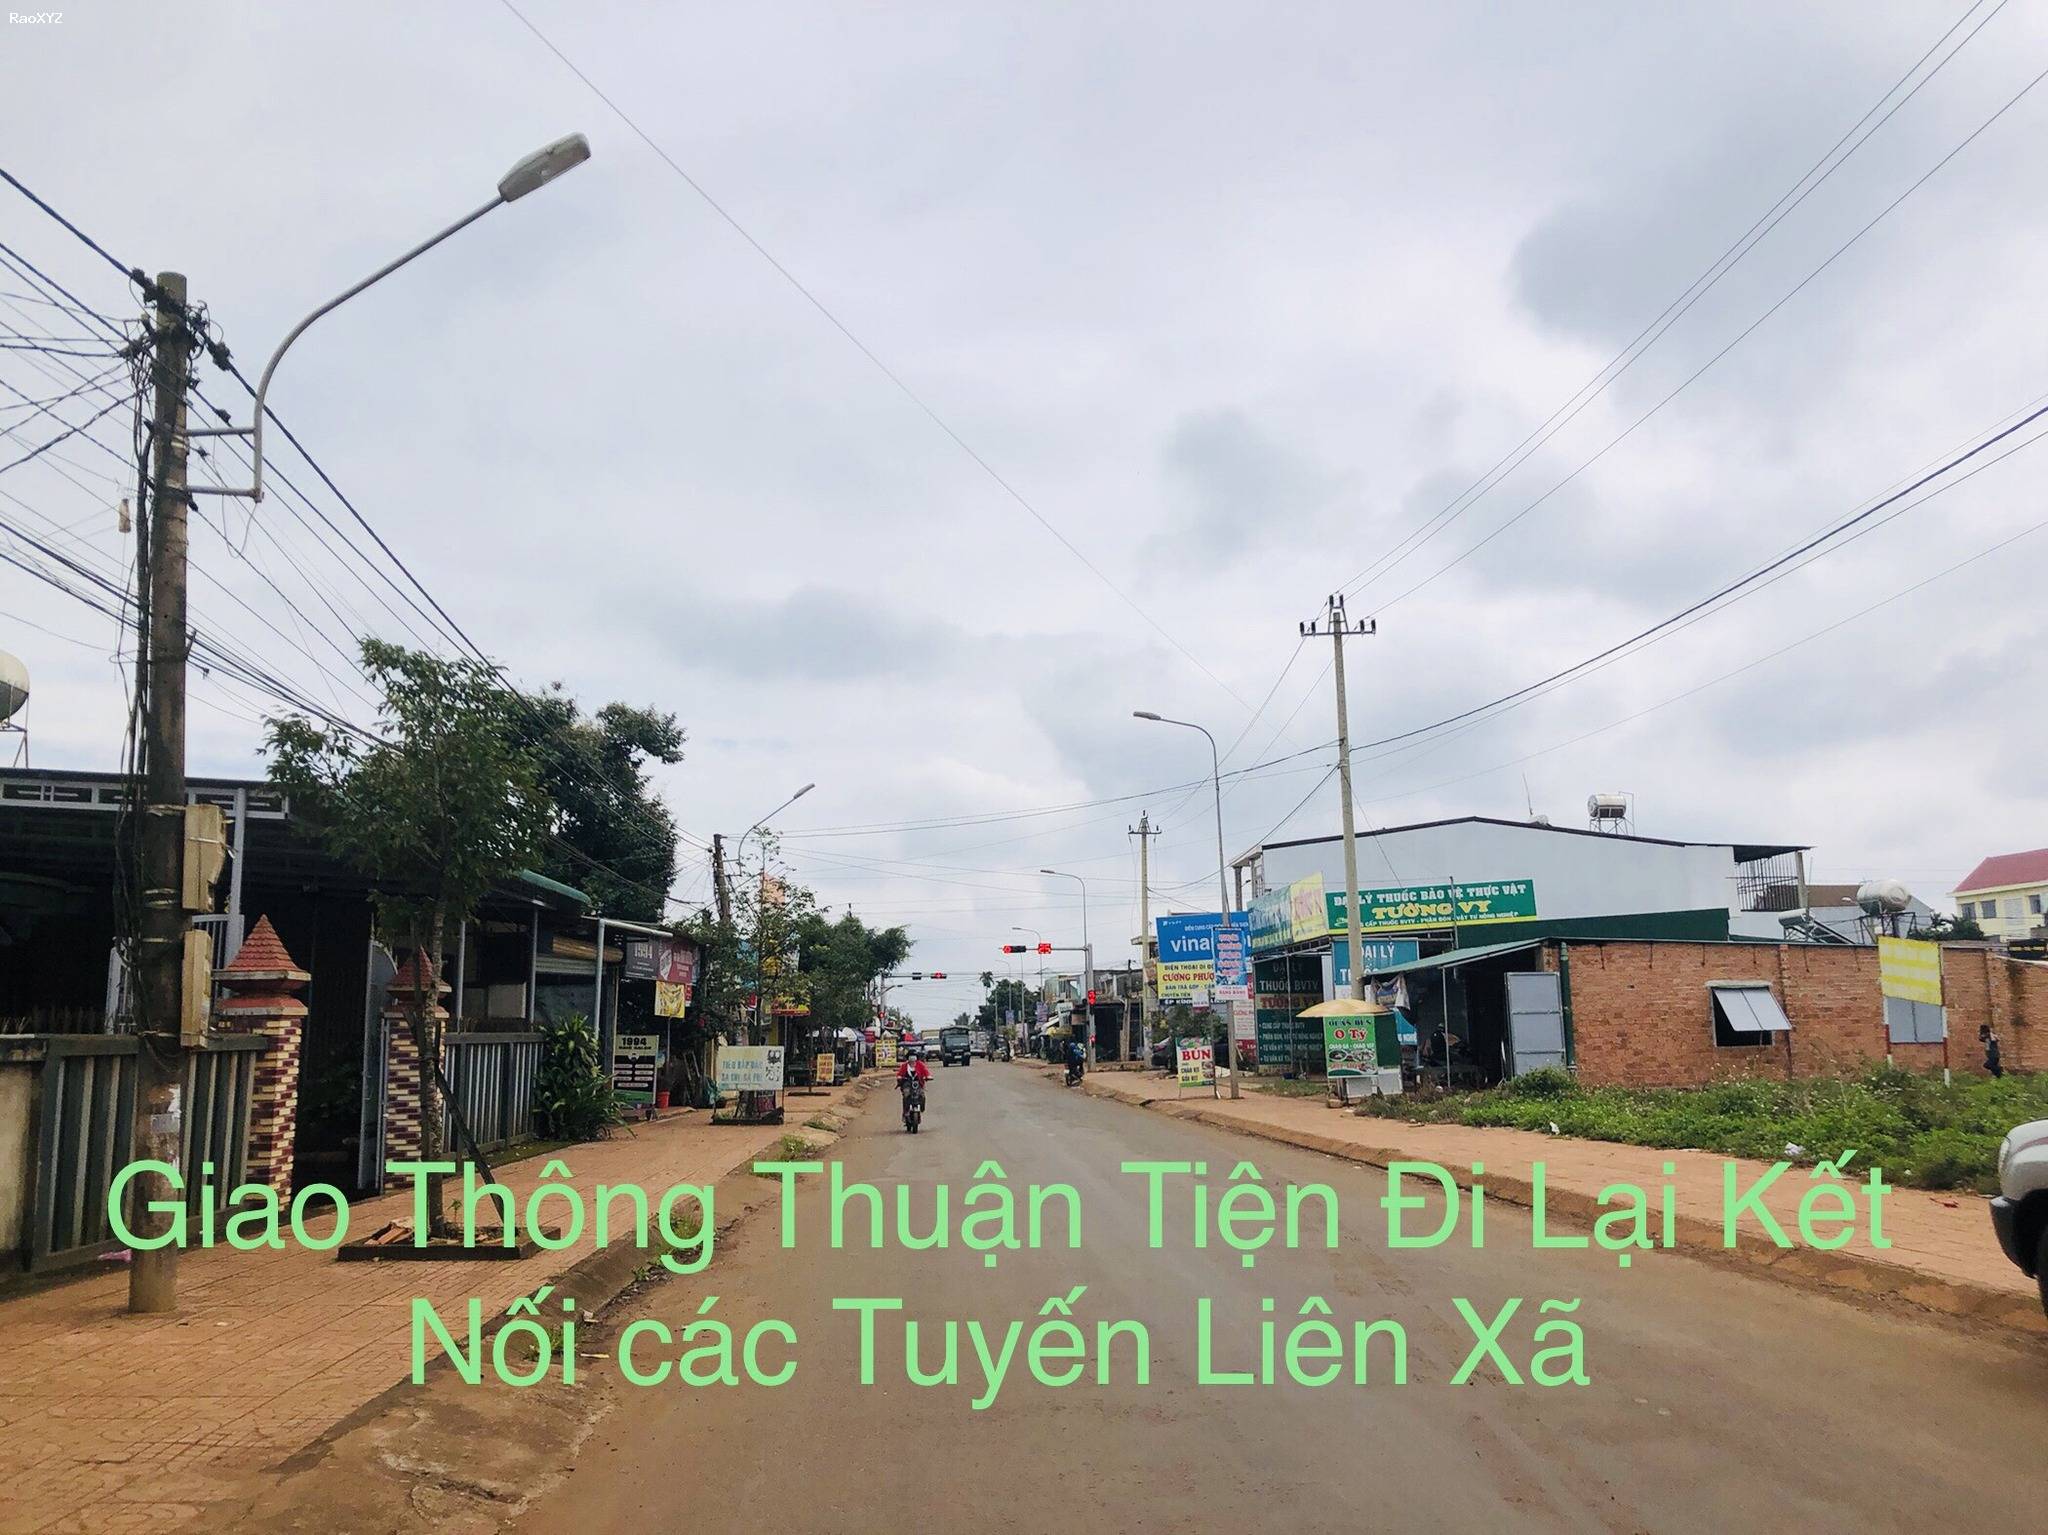 Bán lô đất mặt tiền Phú Lộc - Krông Năng